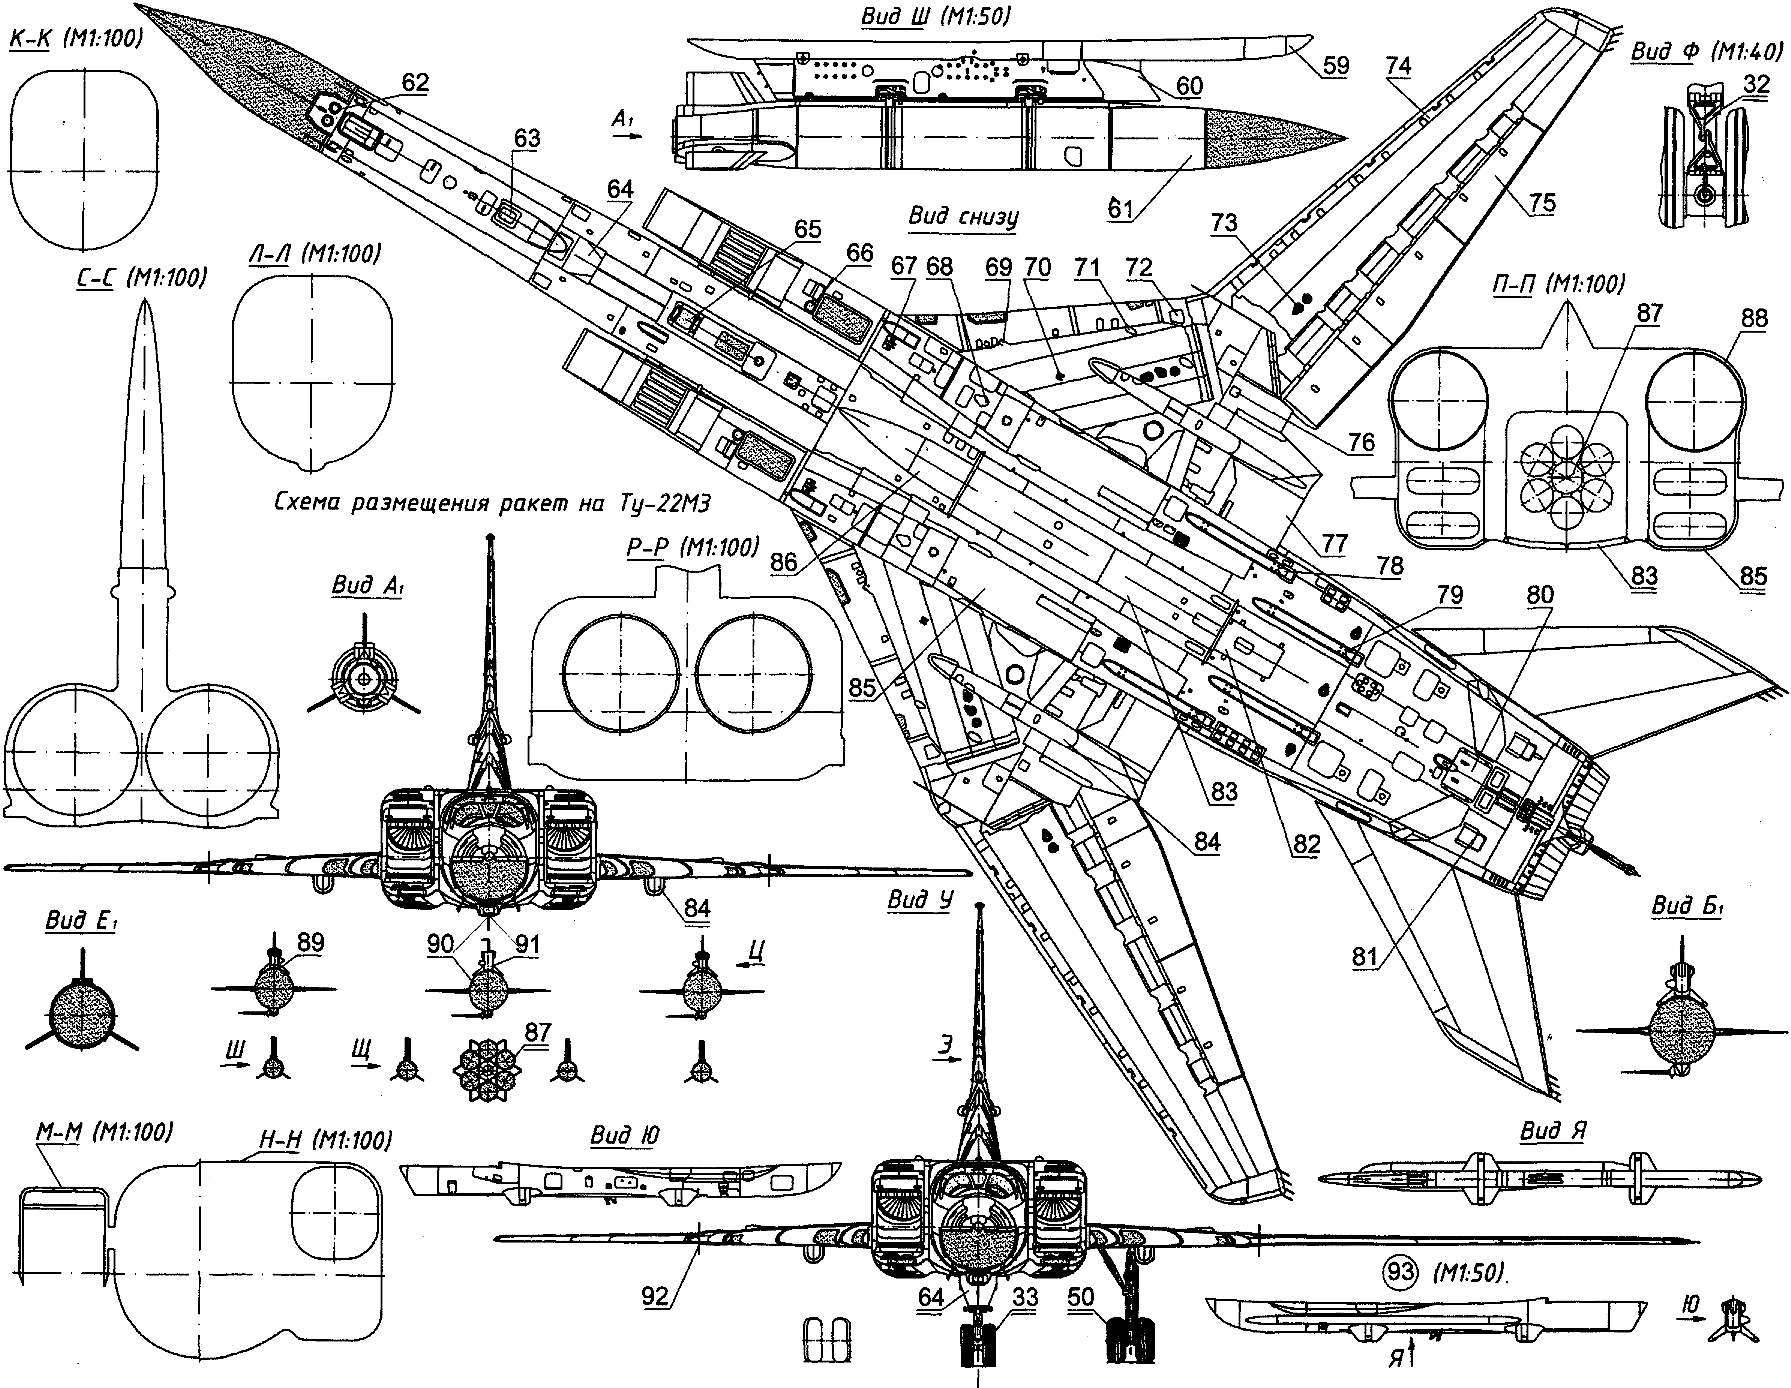 Бомбардировщик Ту-22М – «почти стратегическое» оружие